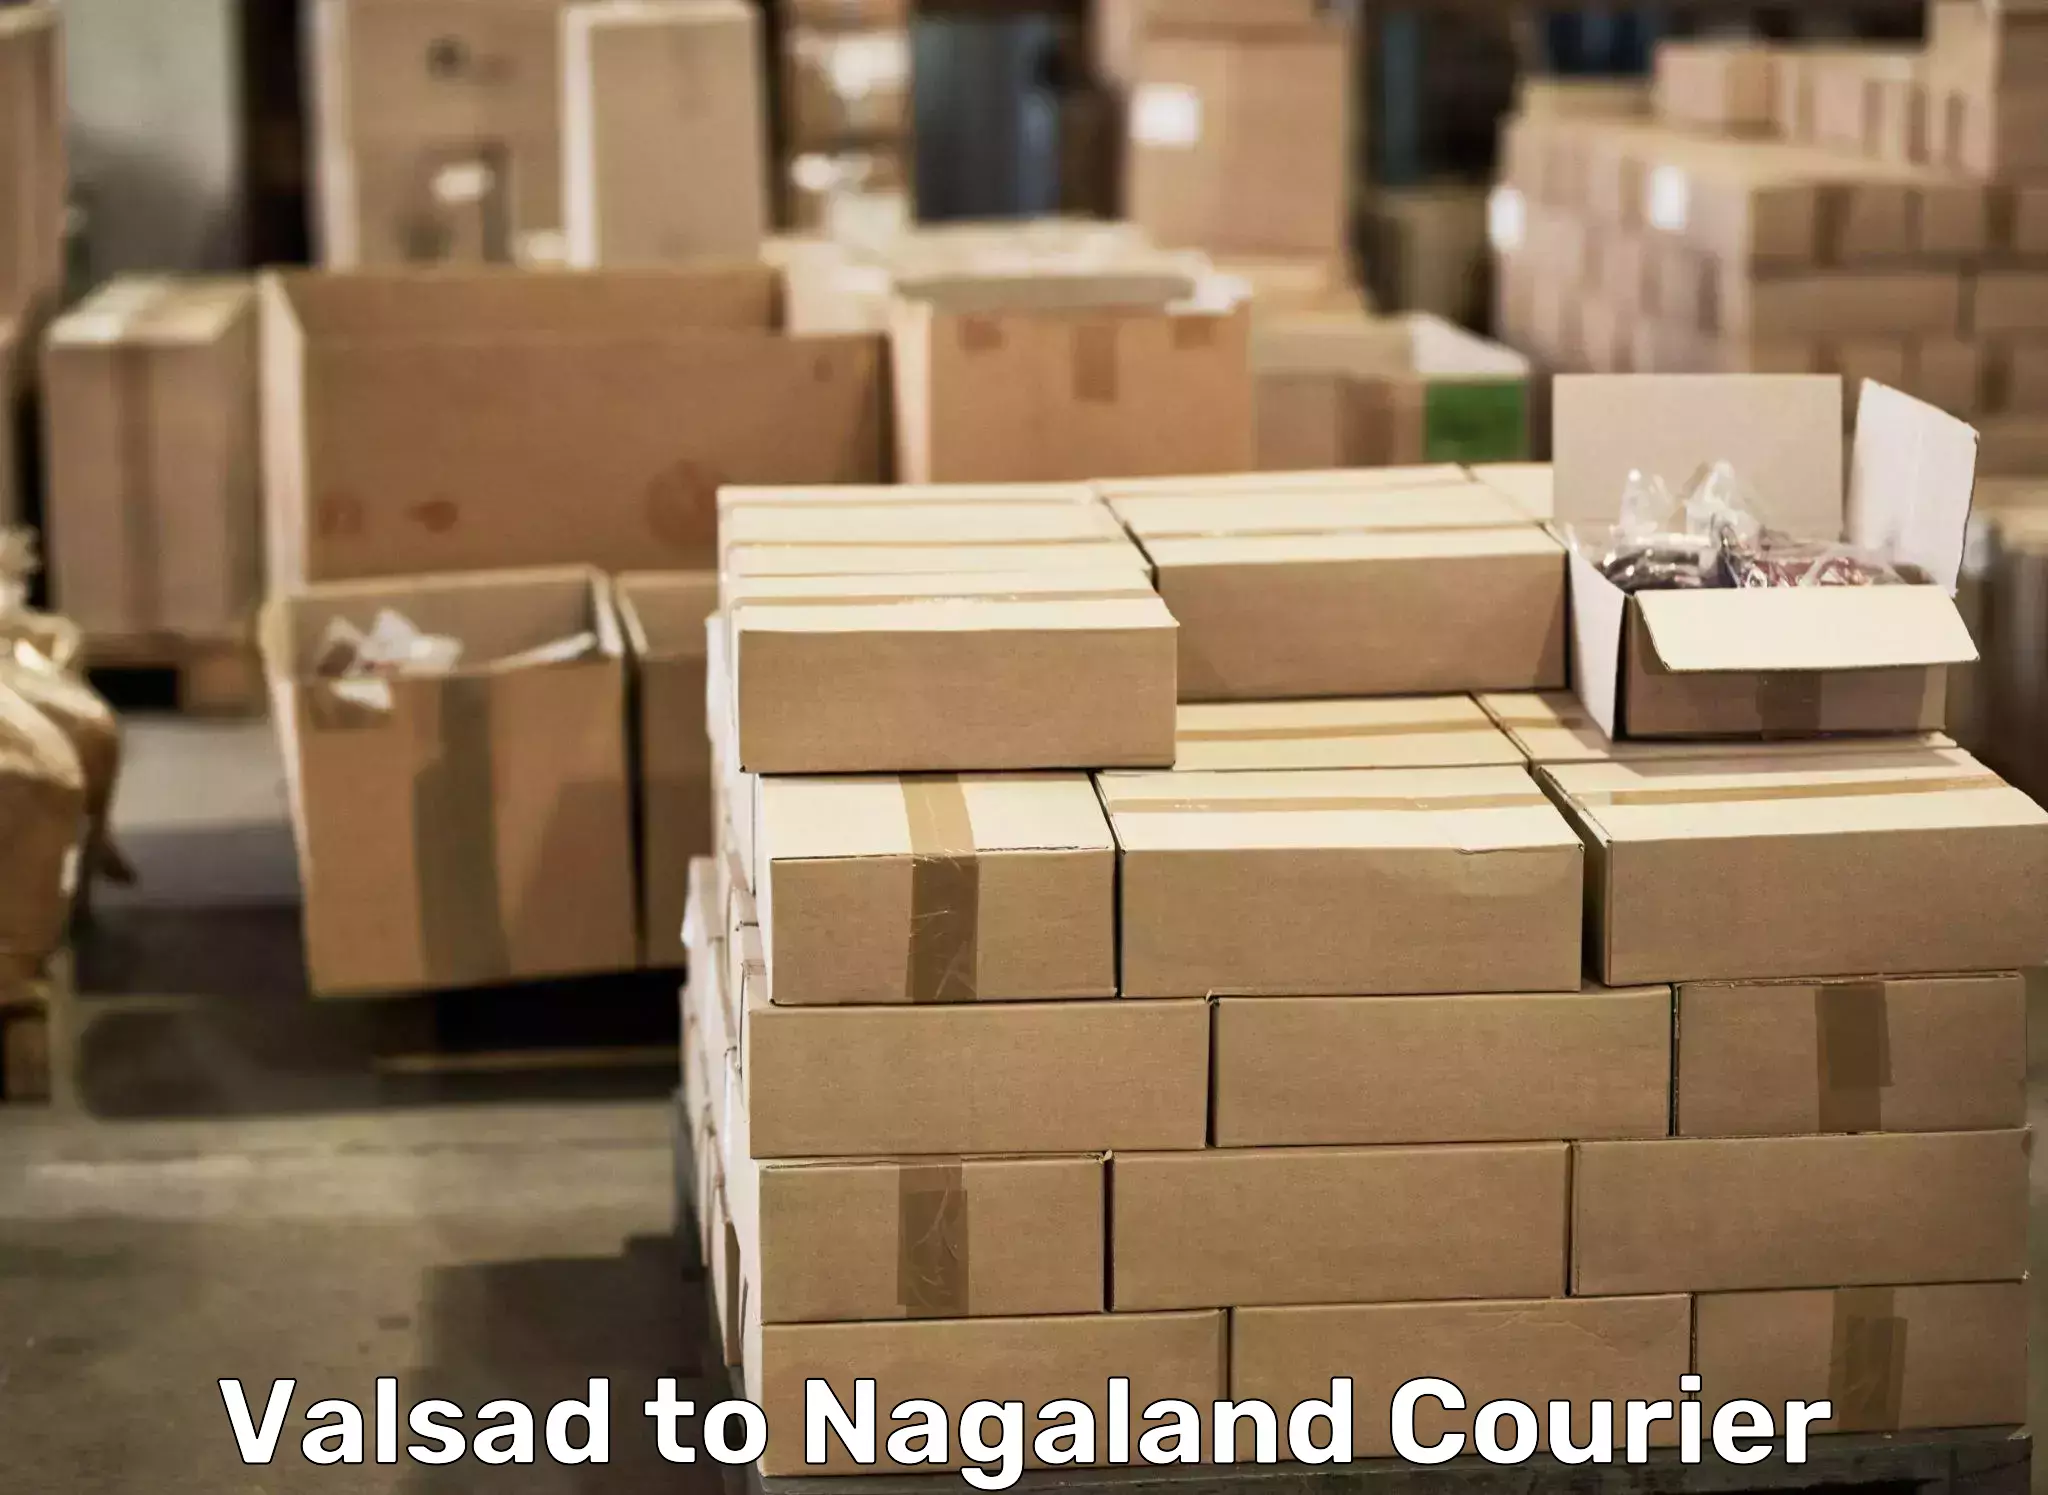 Furniture transport service Valsad to Nagaland